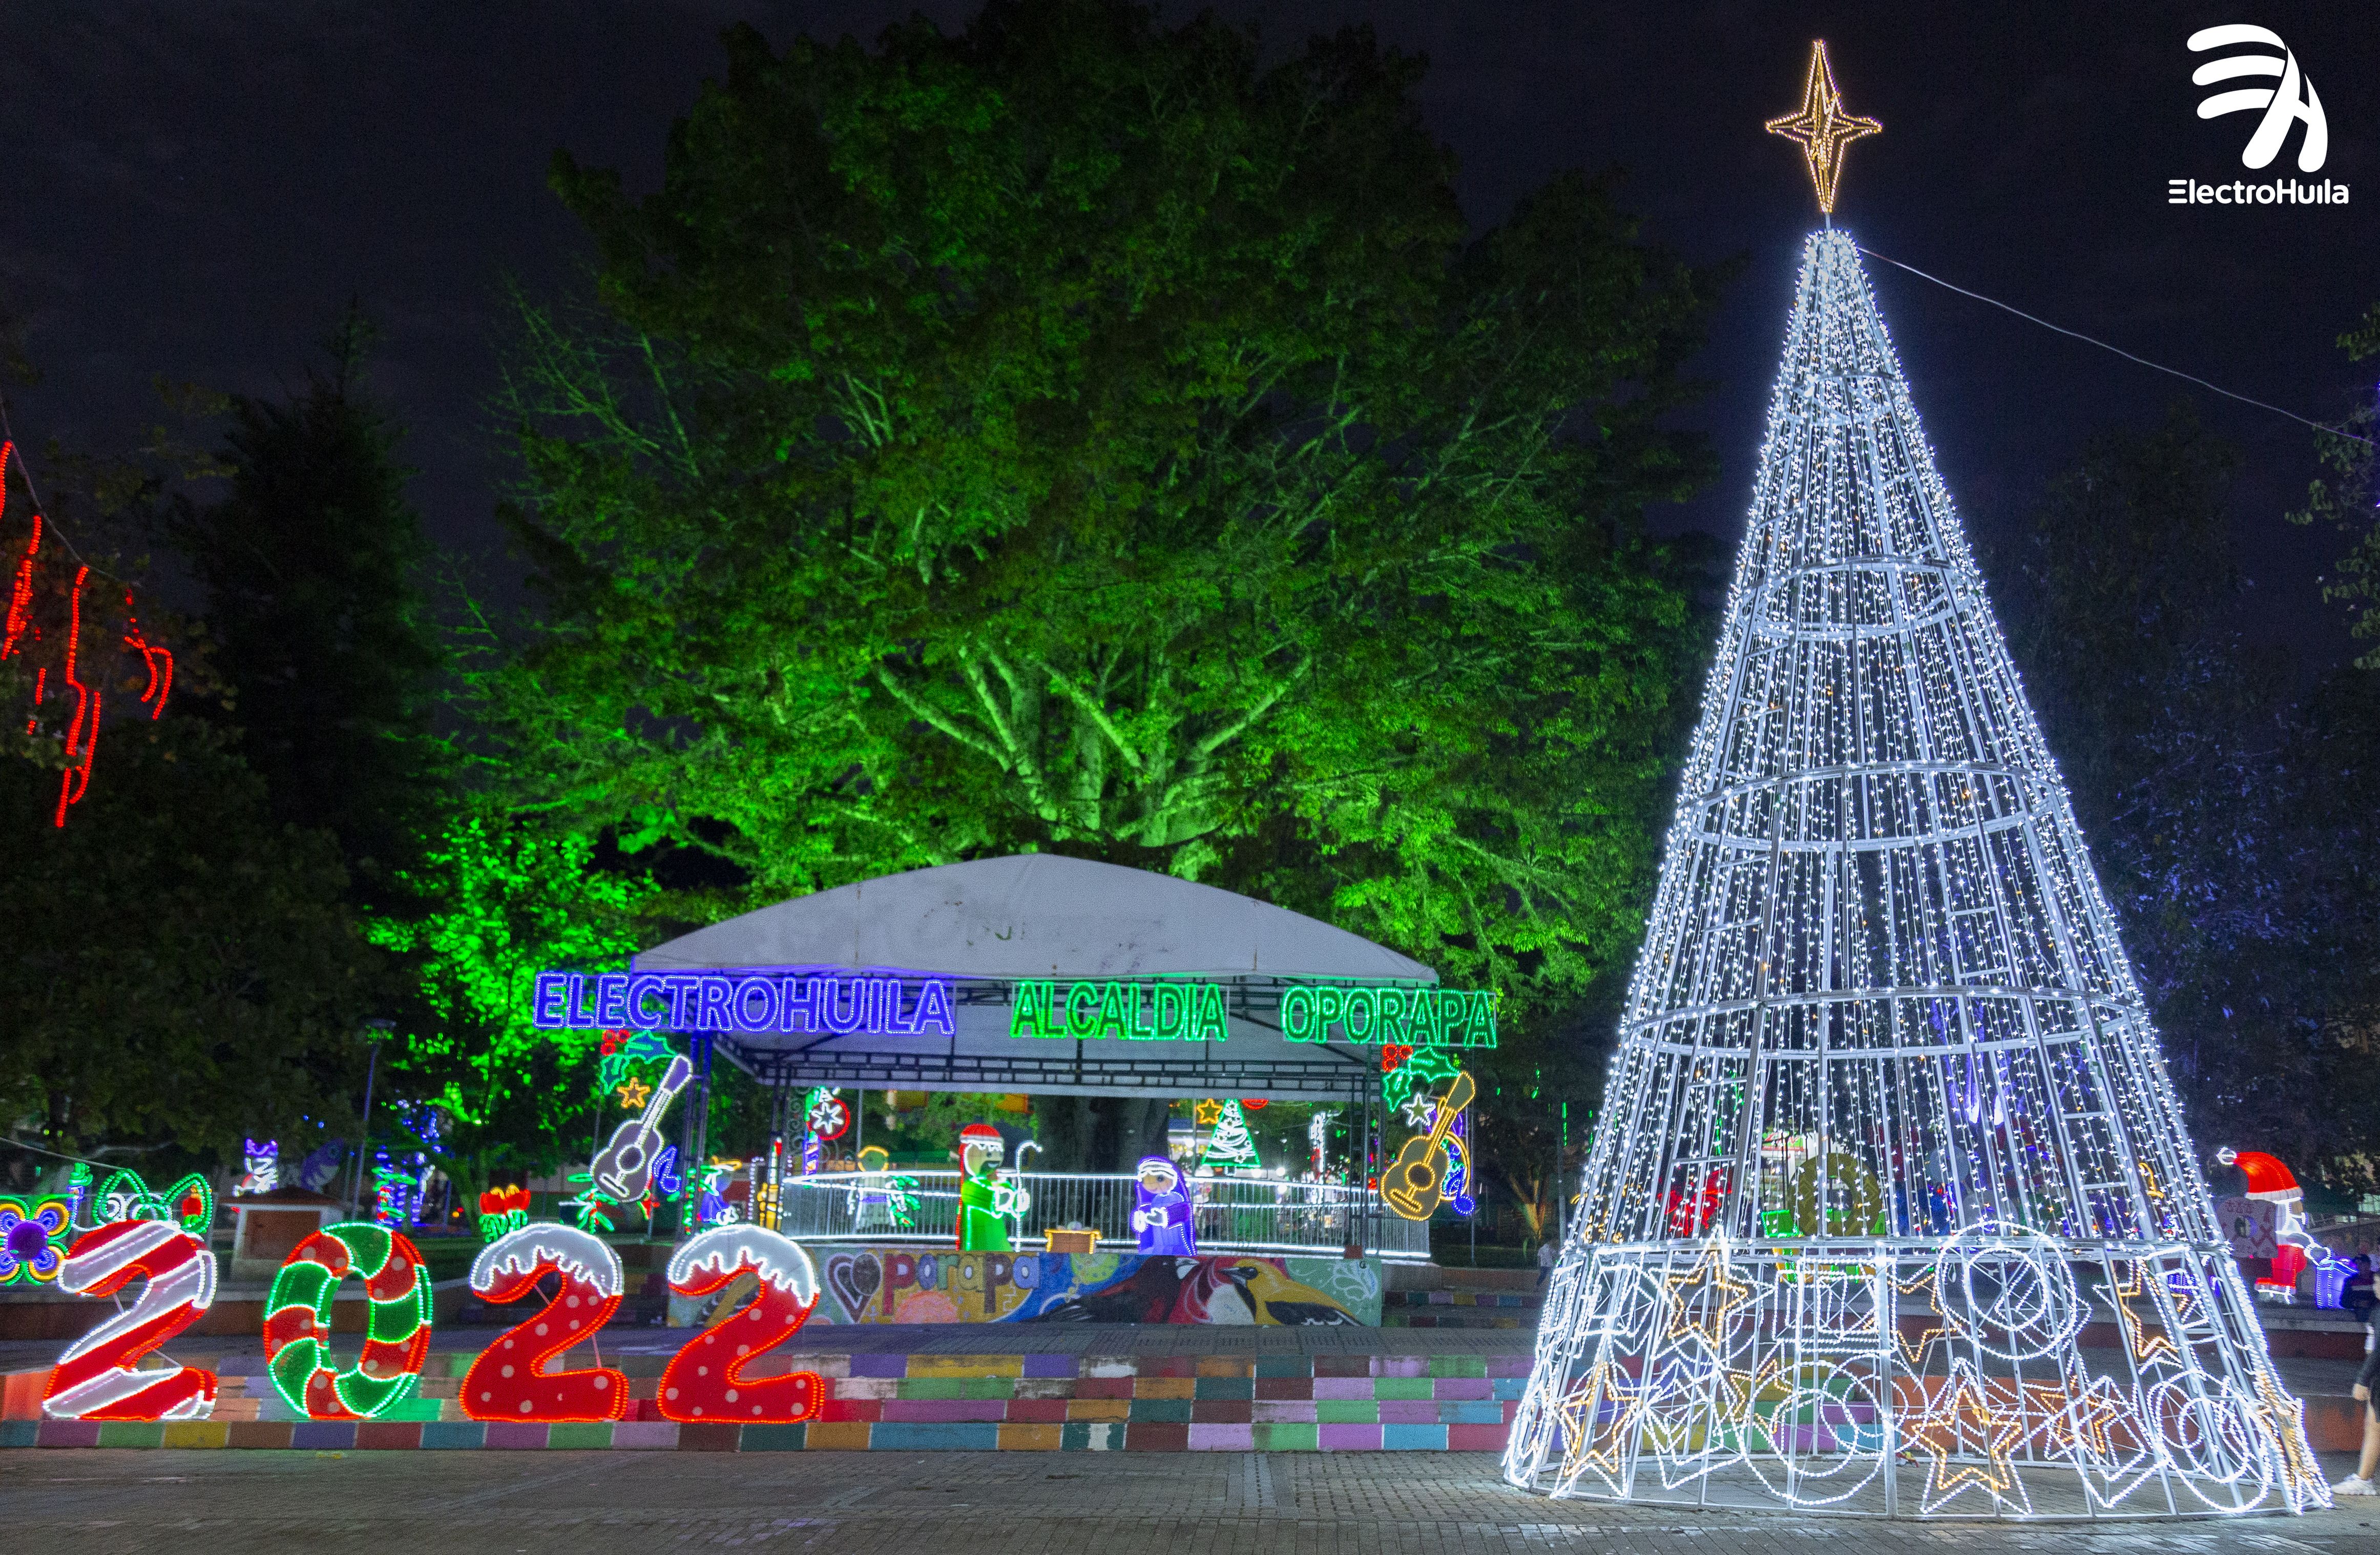 7.Oporapa, conocido como el municipio pesebre del Huila disfruta de su alumbrado navideño en el parque principal.